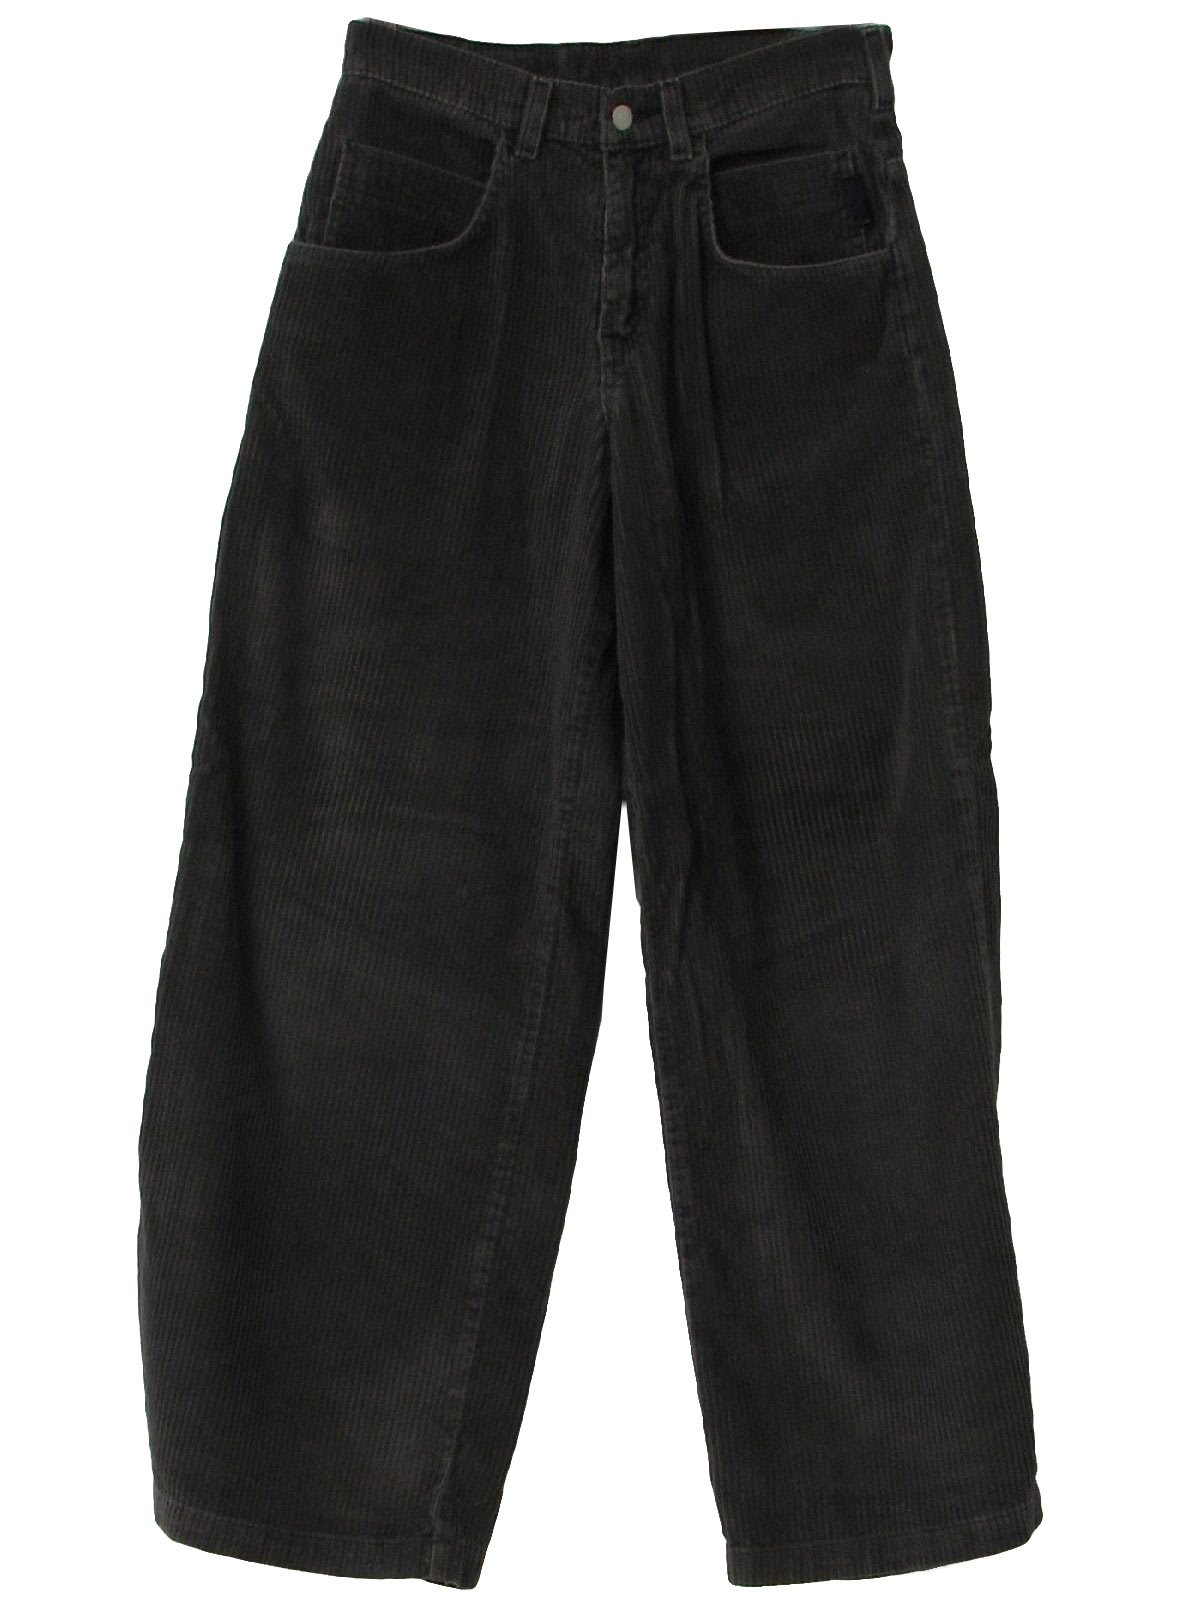 Nineties Vintage Pants: 90s -Levis- Mens charcoal grey